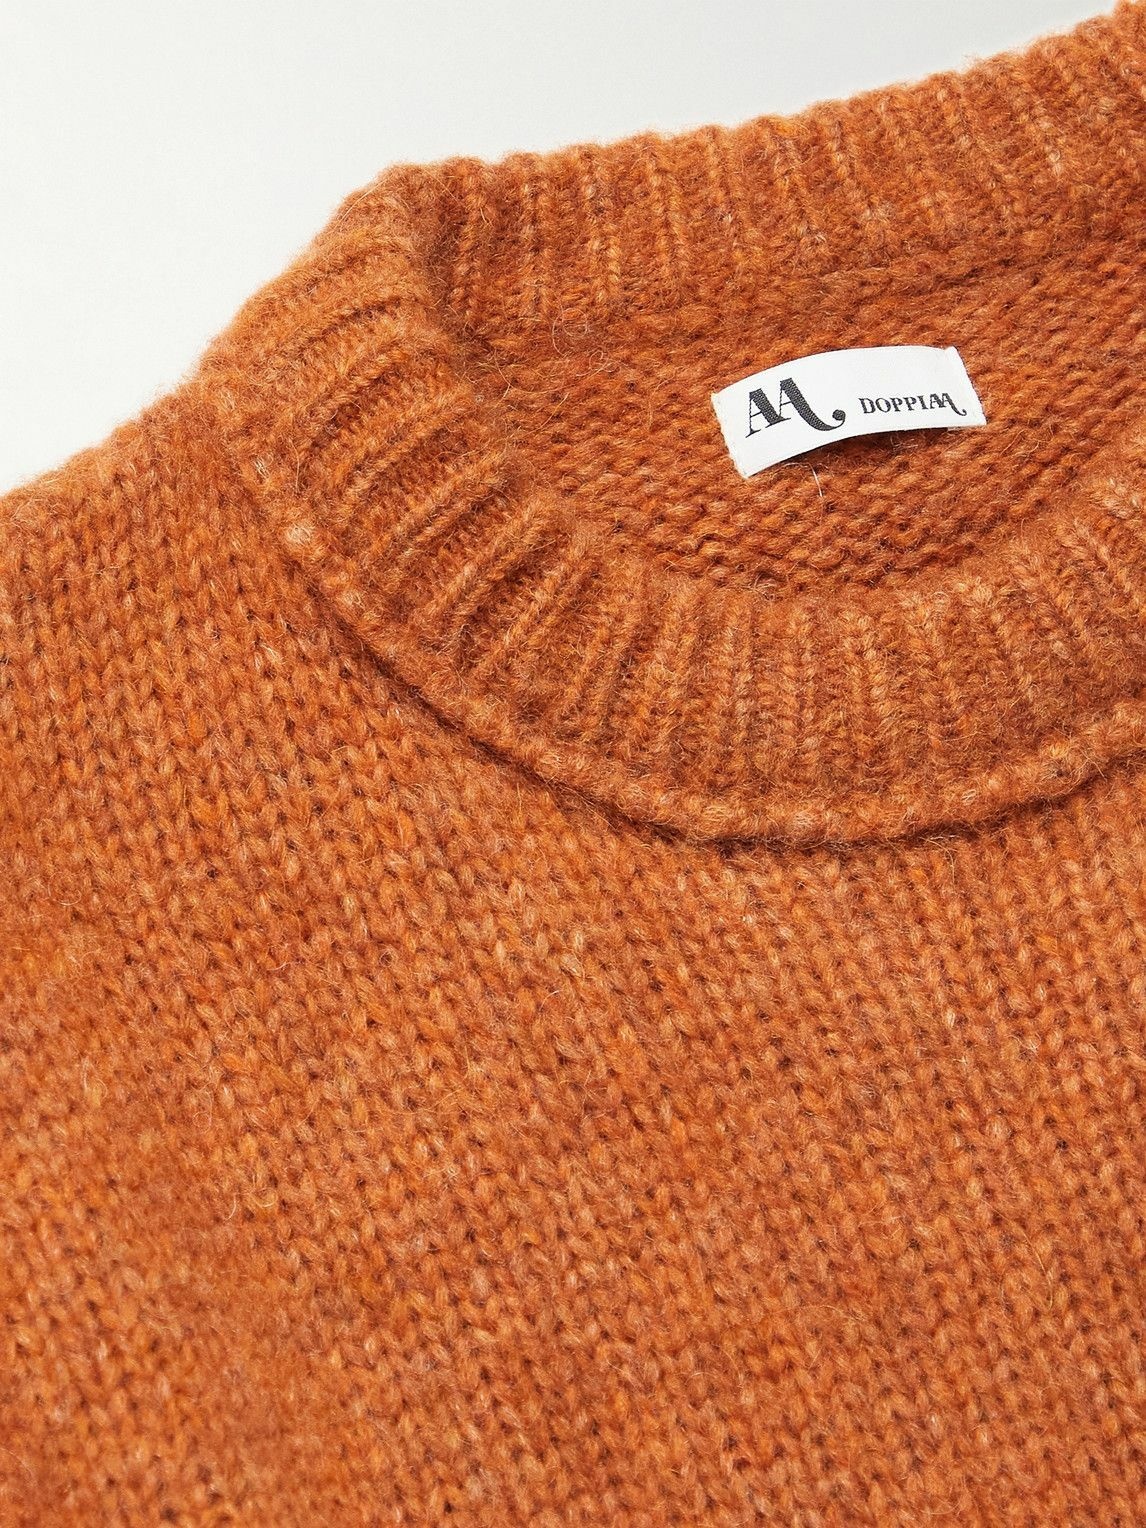 DOPPIAA - Aappio Alpaca-Blend Sweater - Orange DOPPIAA